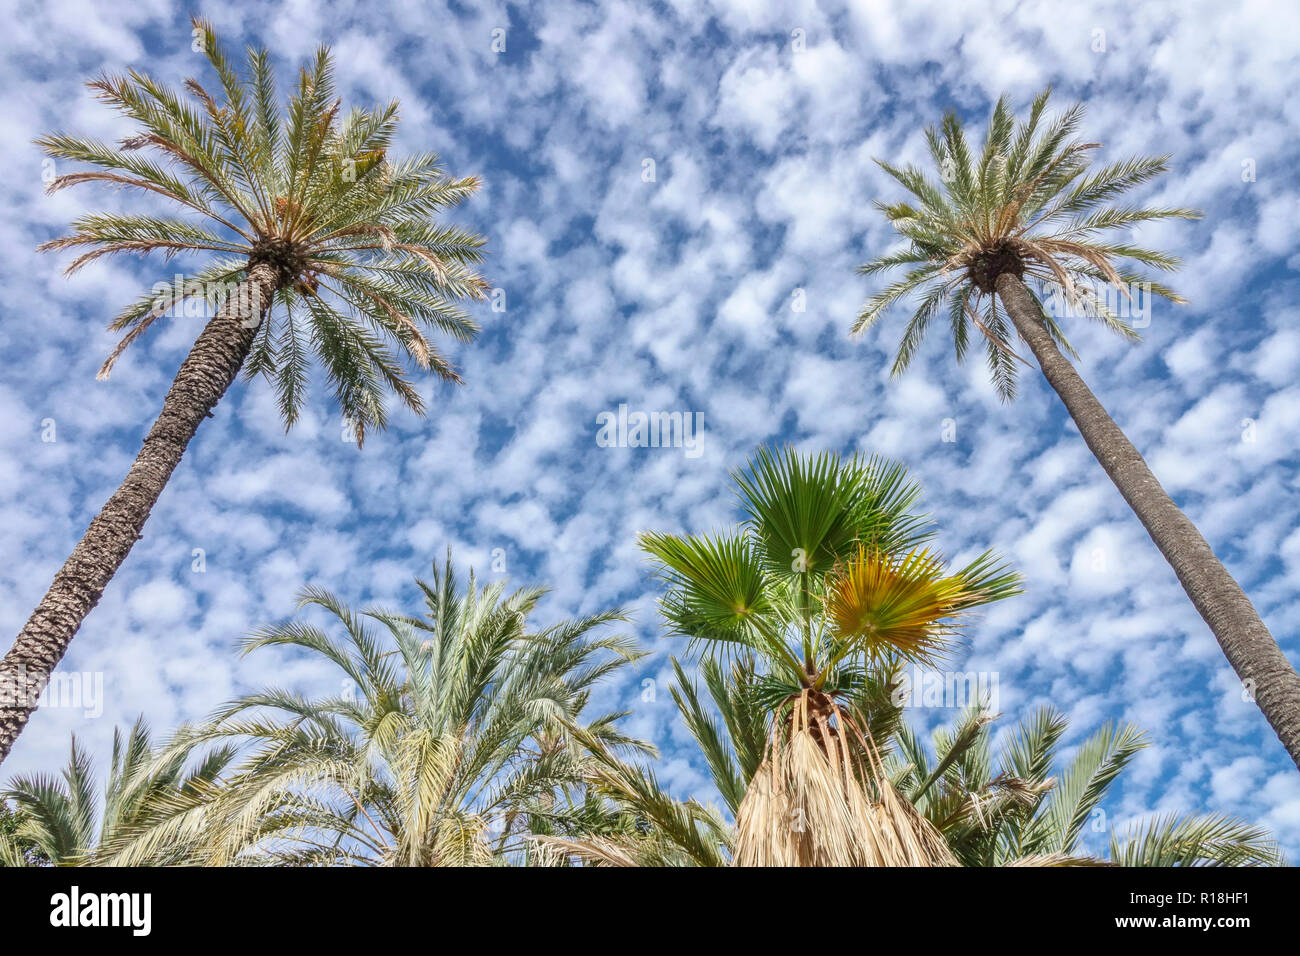 Spanien, Elche, Palmen blauer Himmel und Wolken berühmter touristischer Ort, palmeral-Ansicht von unten Stockfoto